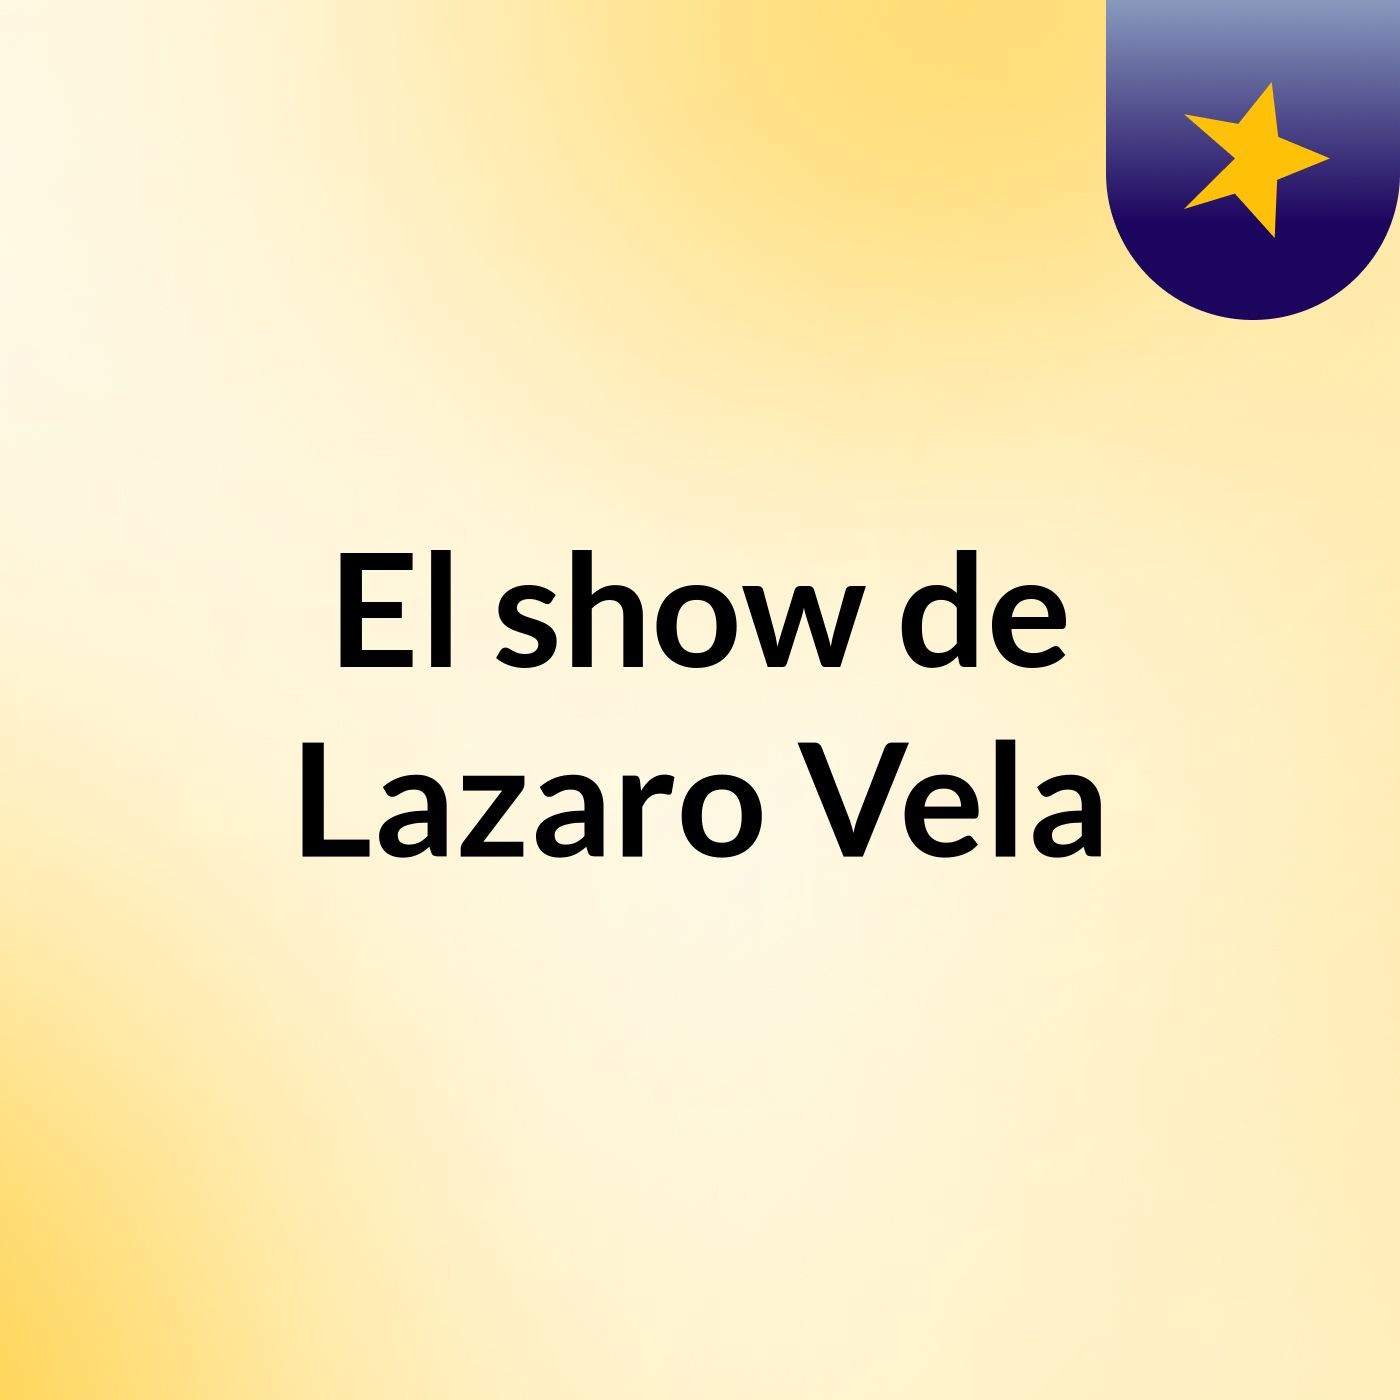 Episodio 3 - El show de Lazaro Vela